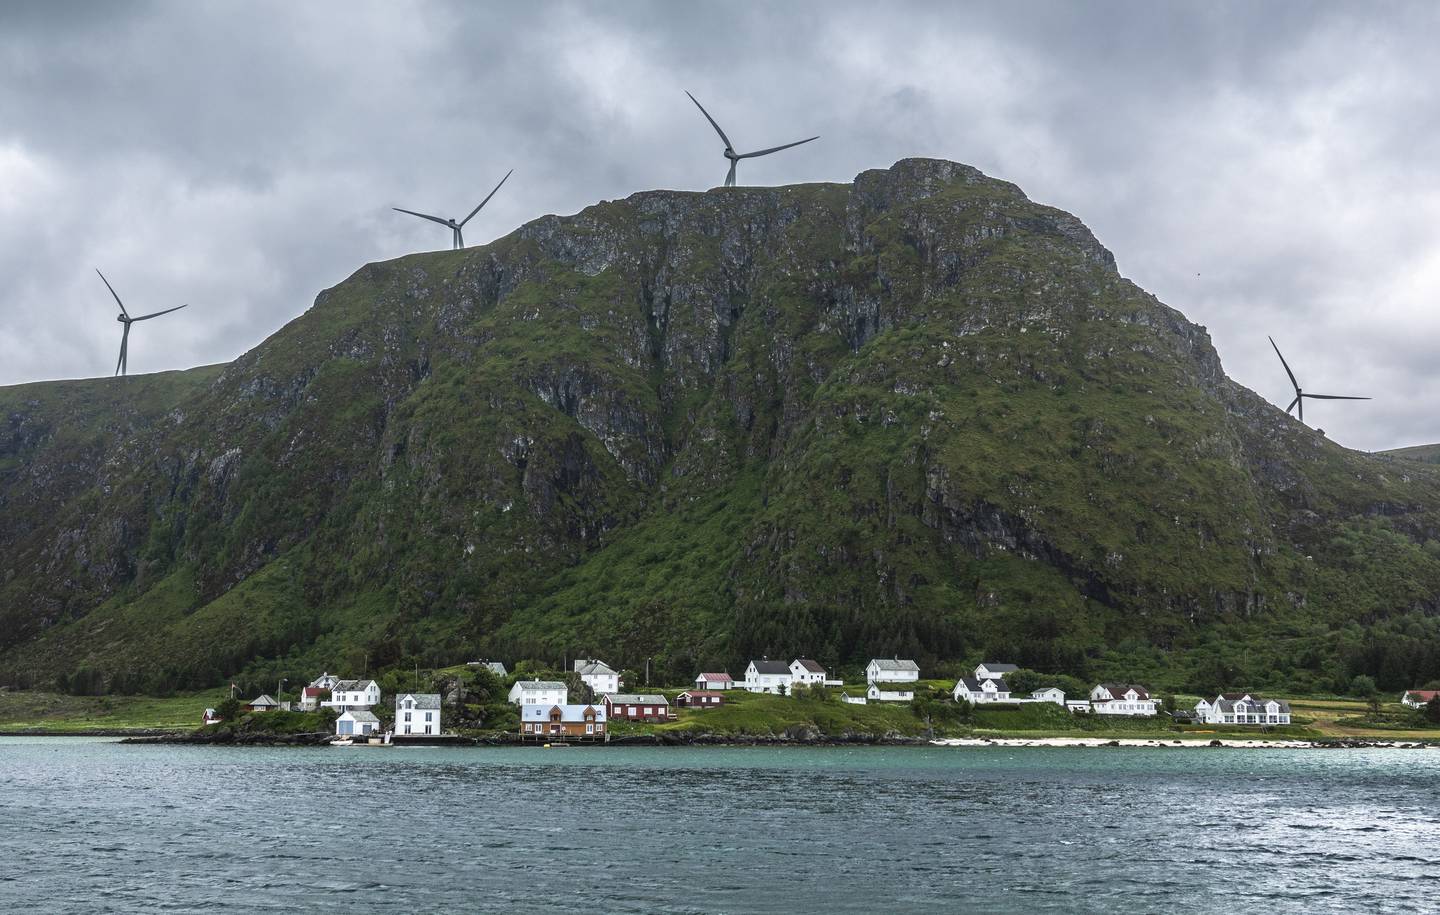 Tettstedet Ulla på Haramsøya i Ålesund kommune i Møre og Romsdal. Vindturbiner tilhørende Haram vindkraftverk på fjellet over tettstedet.